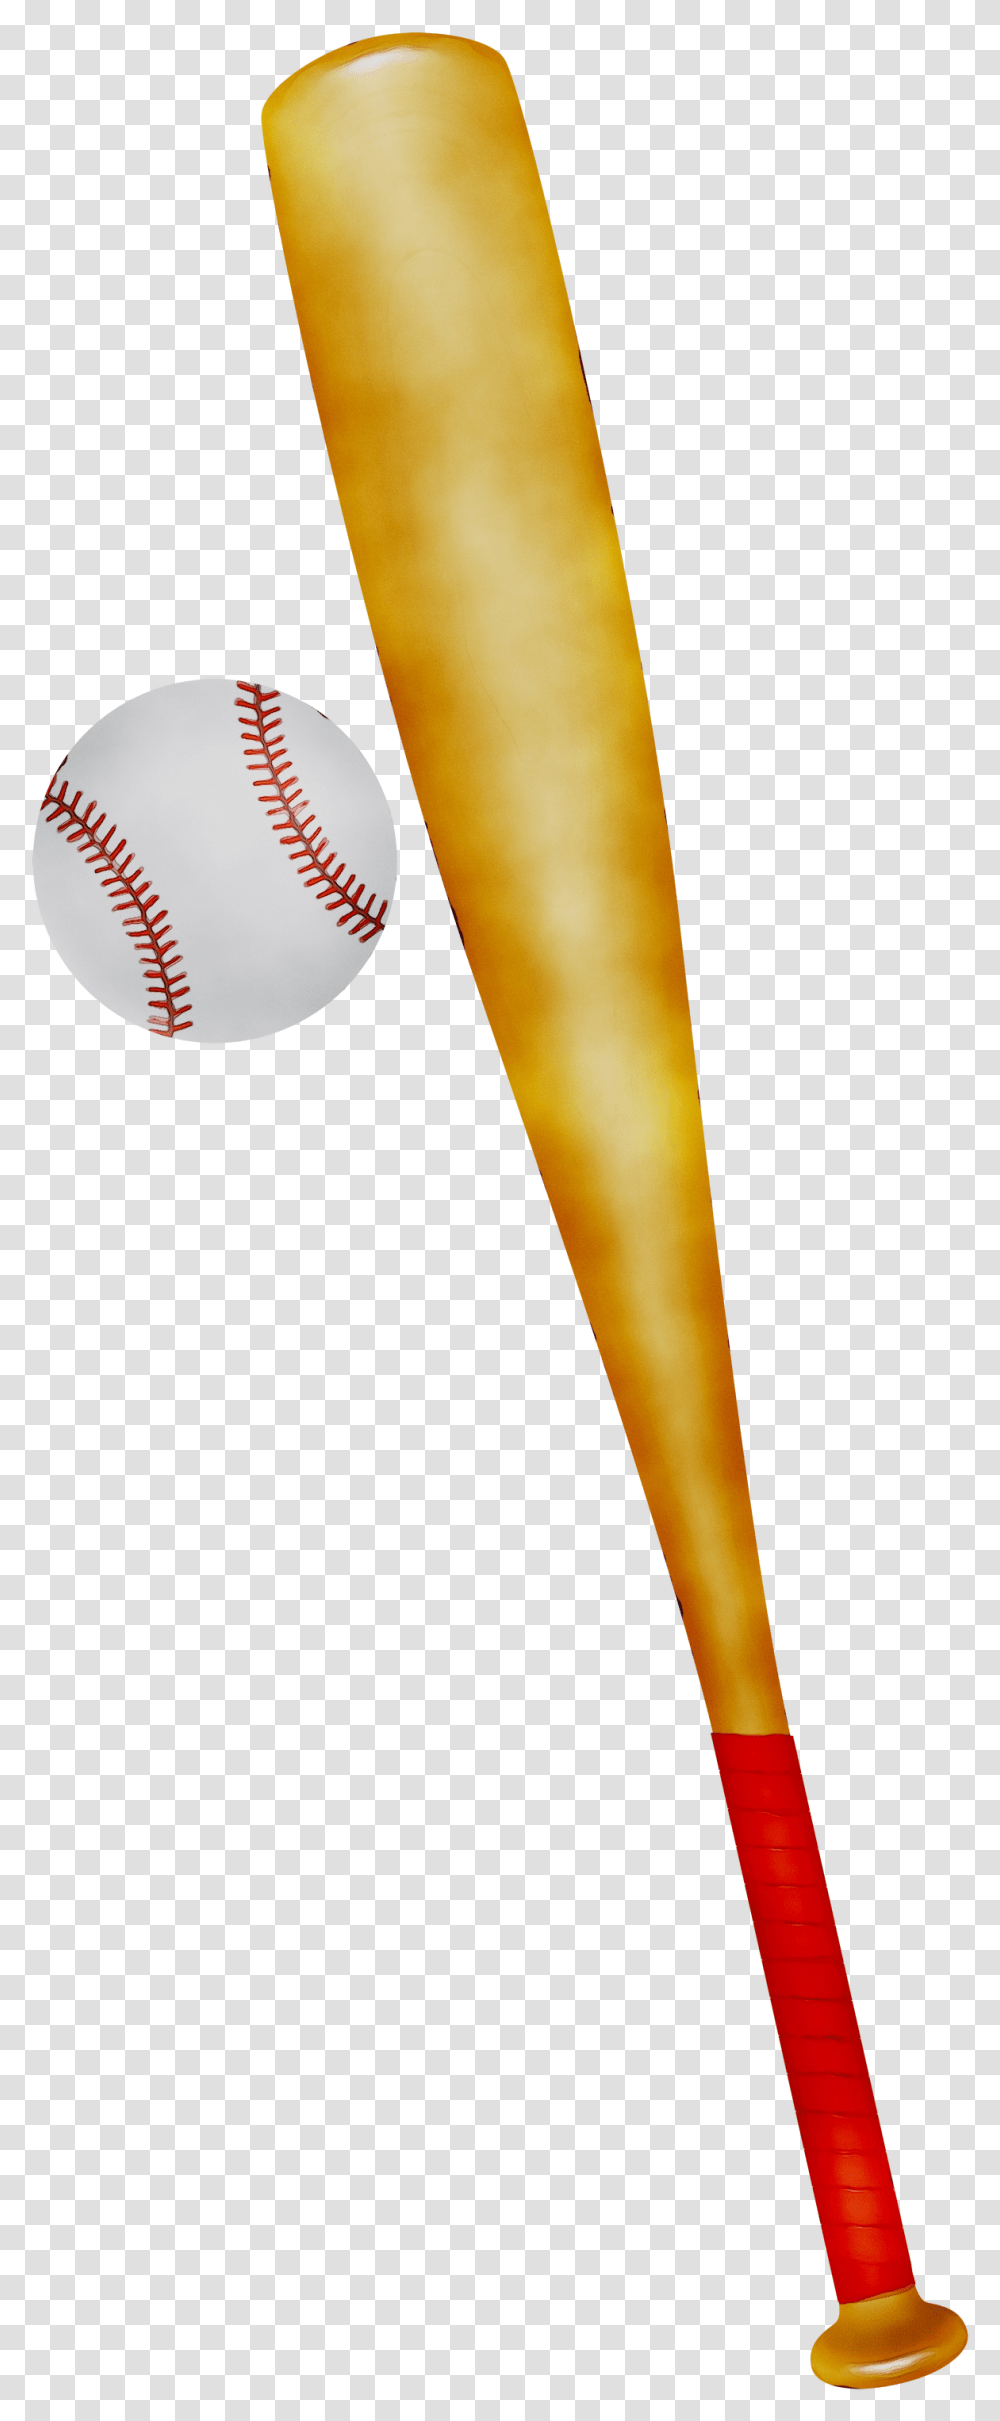 Baseball Bats Product Design Baseball Bat, Team Sport, Sports, Softball, Light Transparent Png